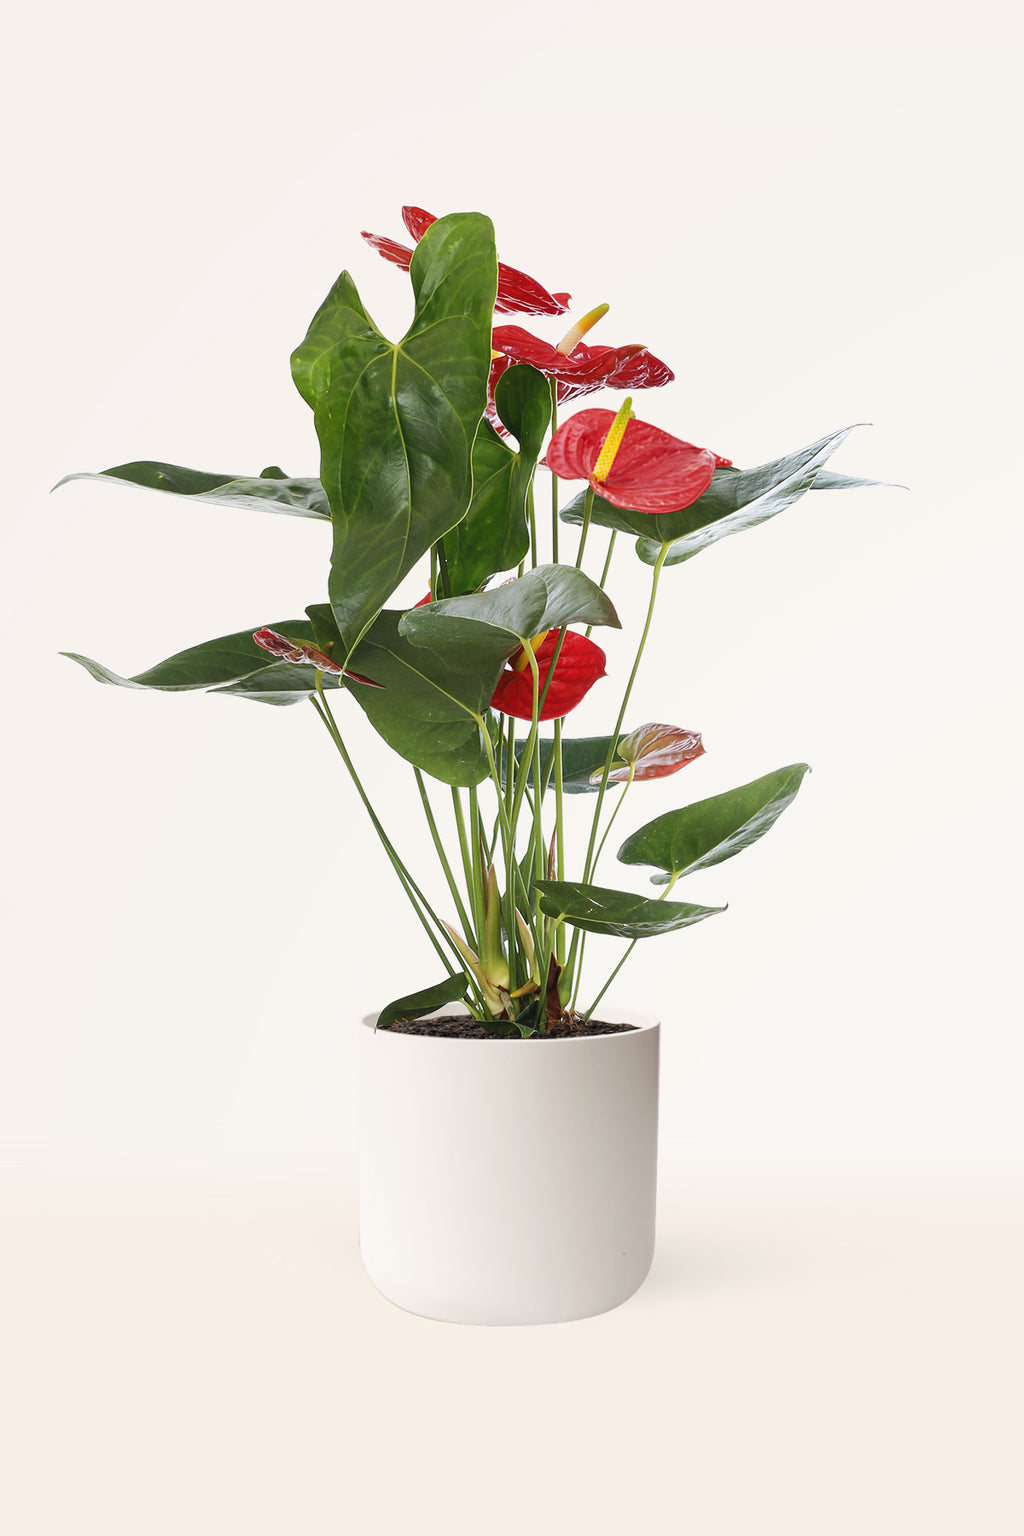 Comprar Anthurium rojo online | April Plants | APRILPLANTS